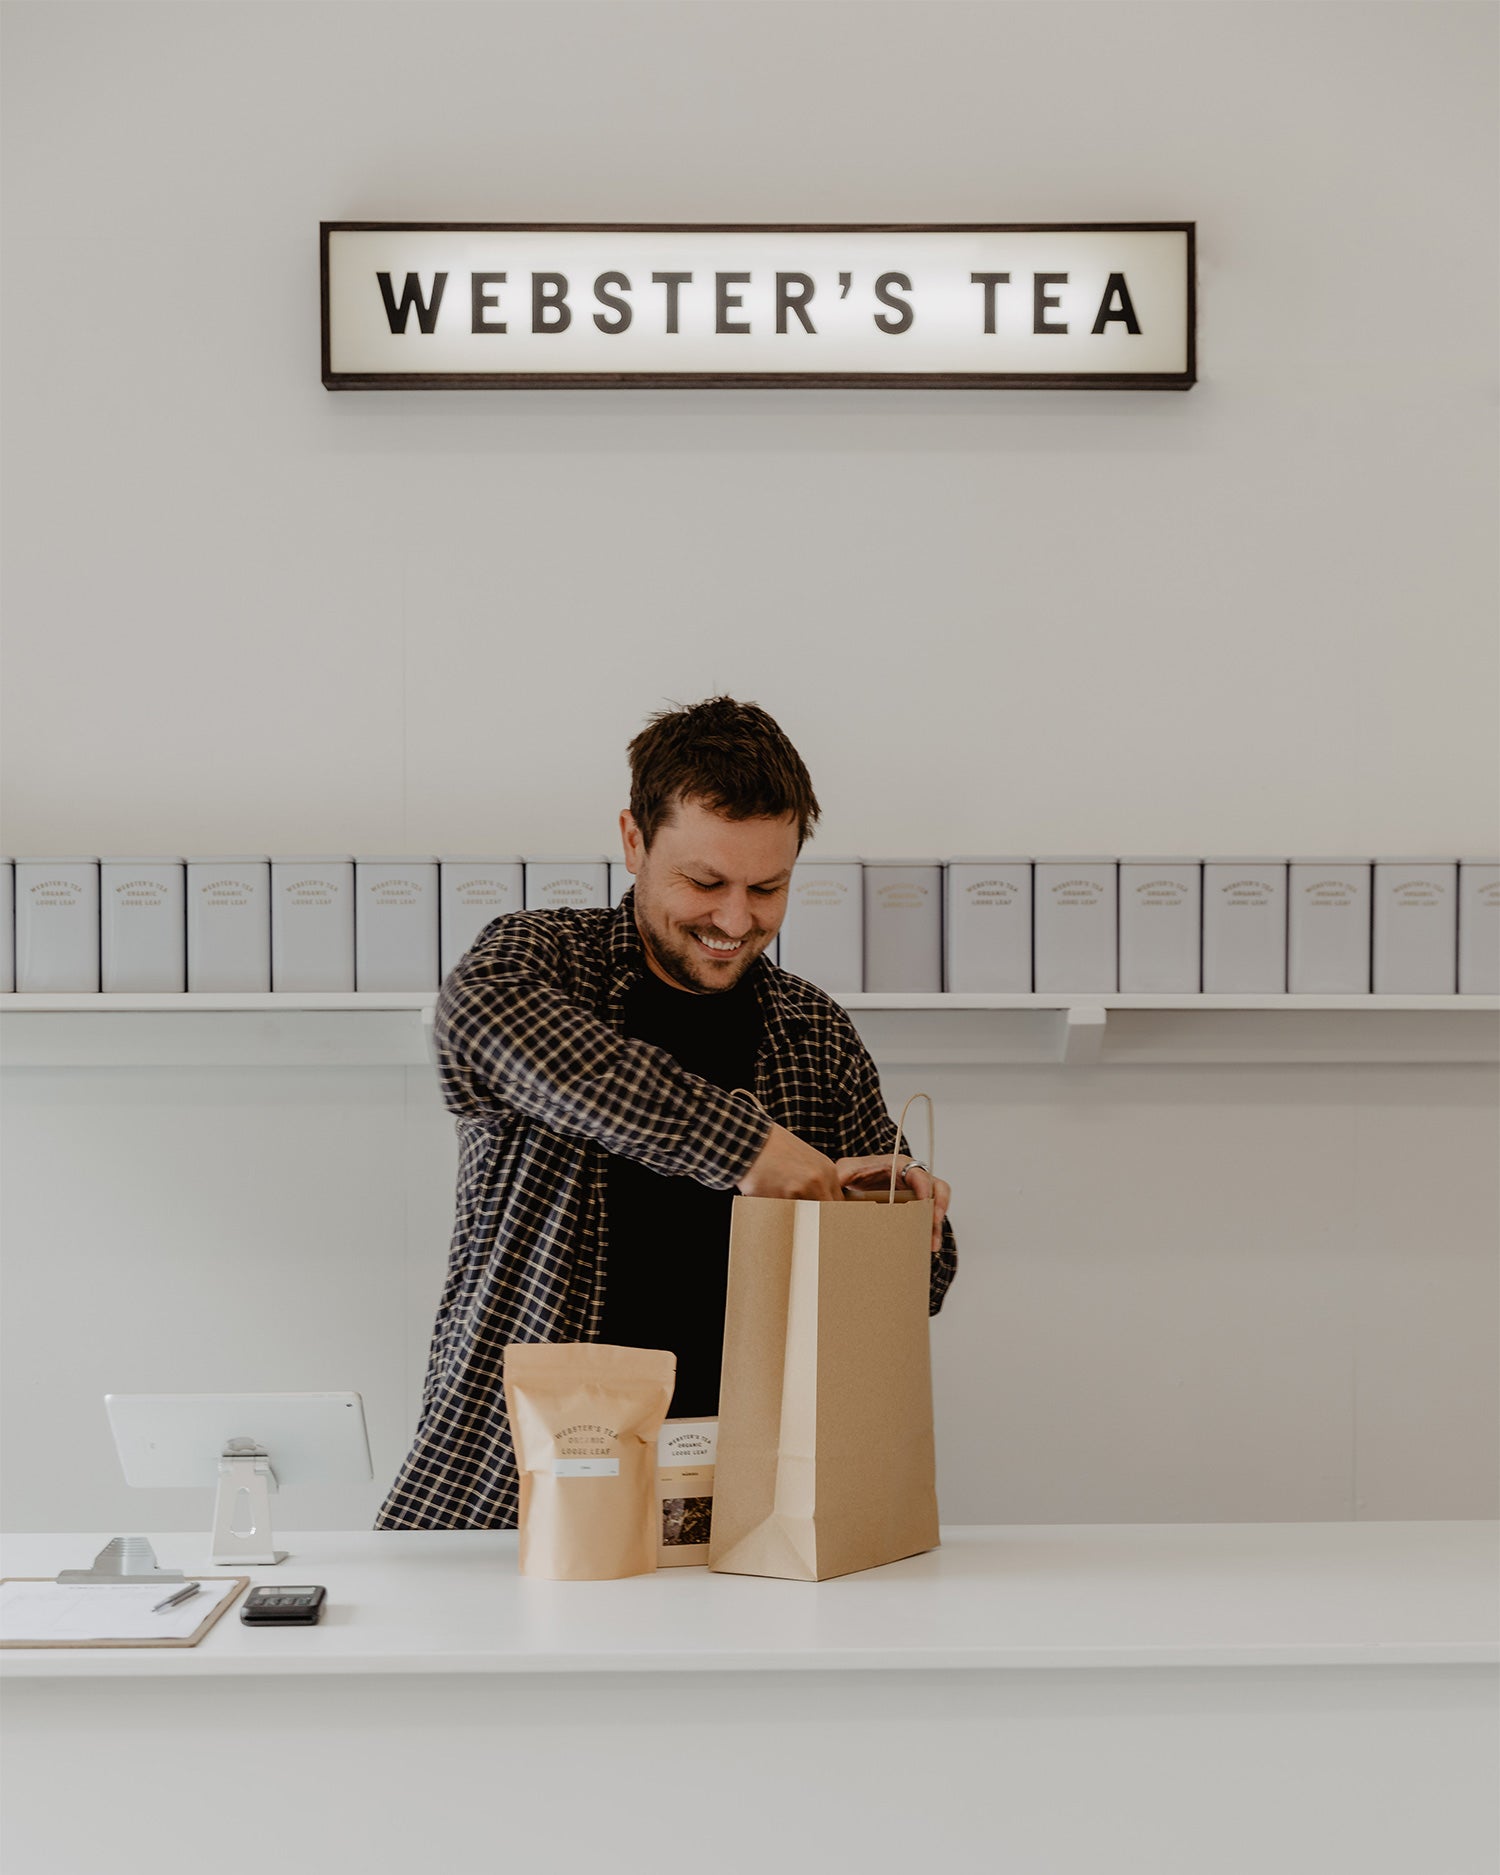 Webster's Tea Shop